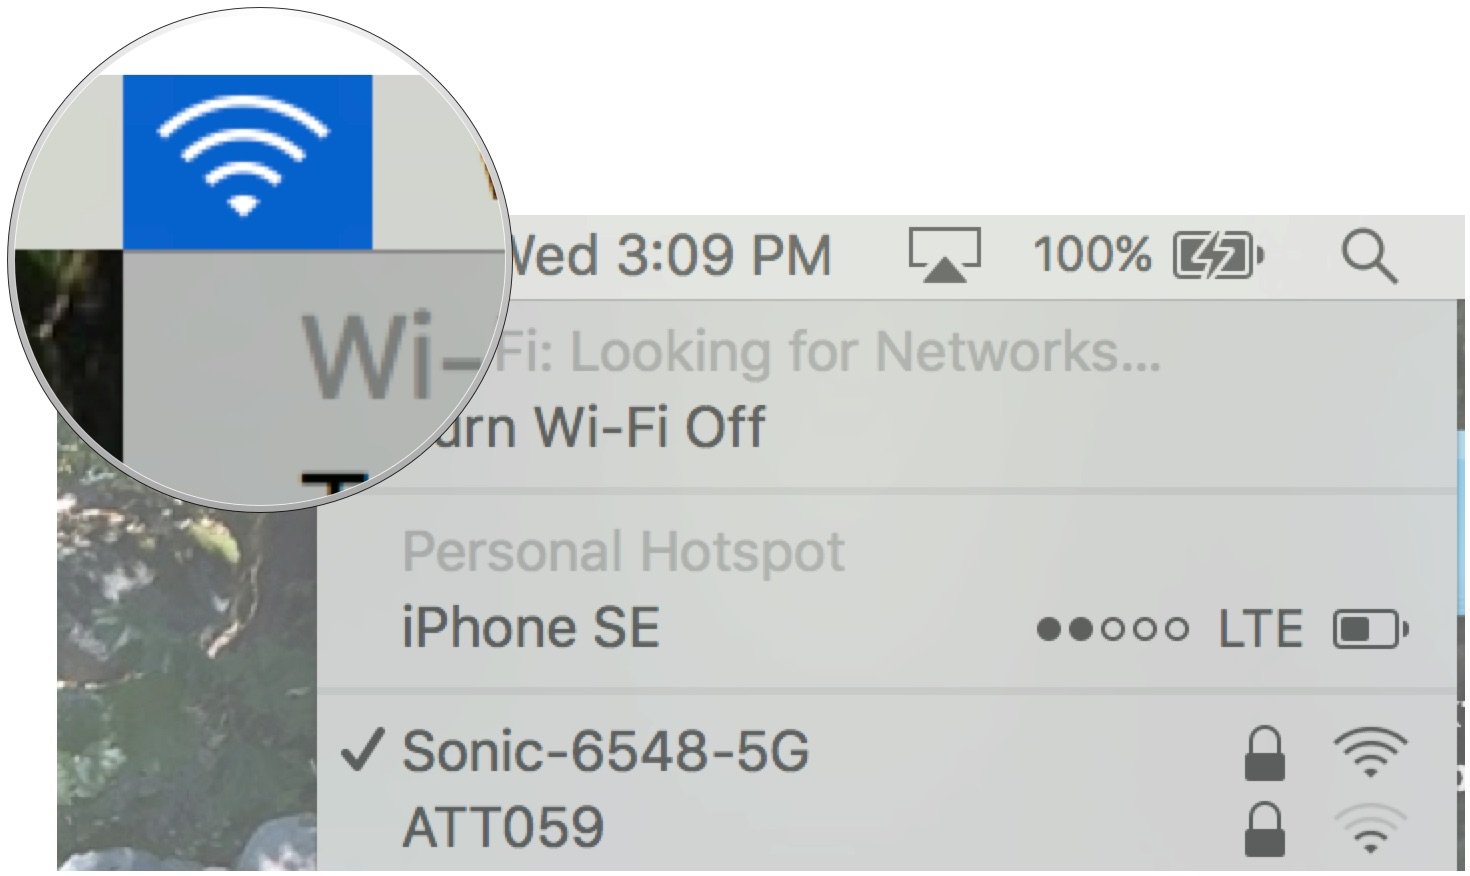 Нажмите на значок Wi-Fi и проверьте имя подключения. 